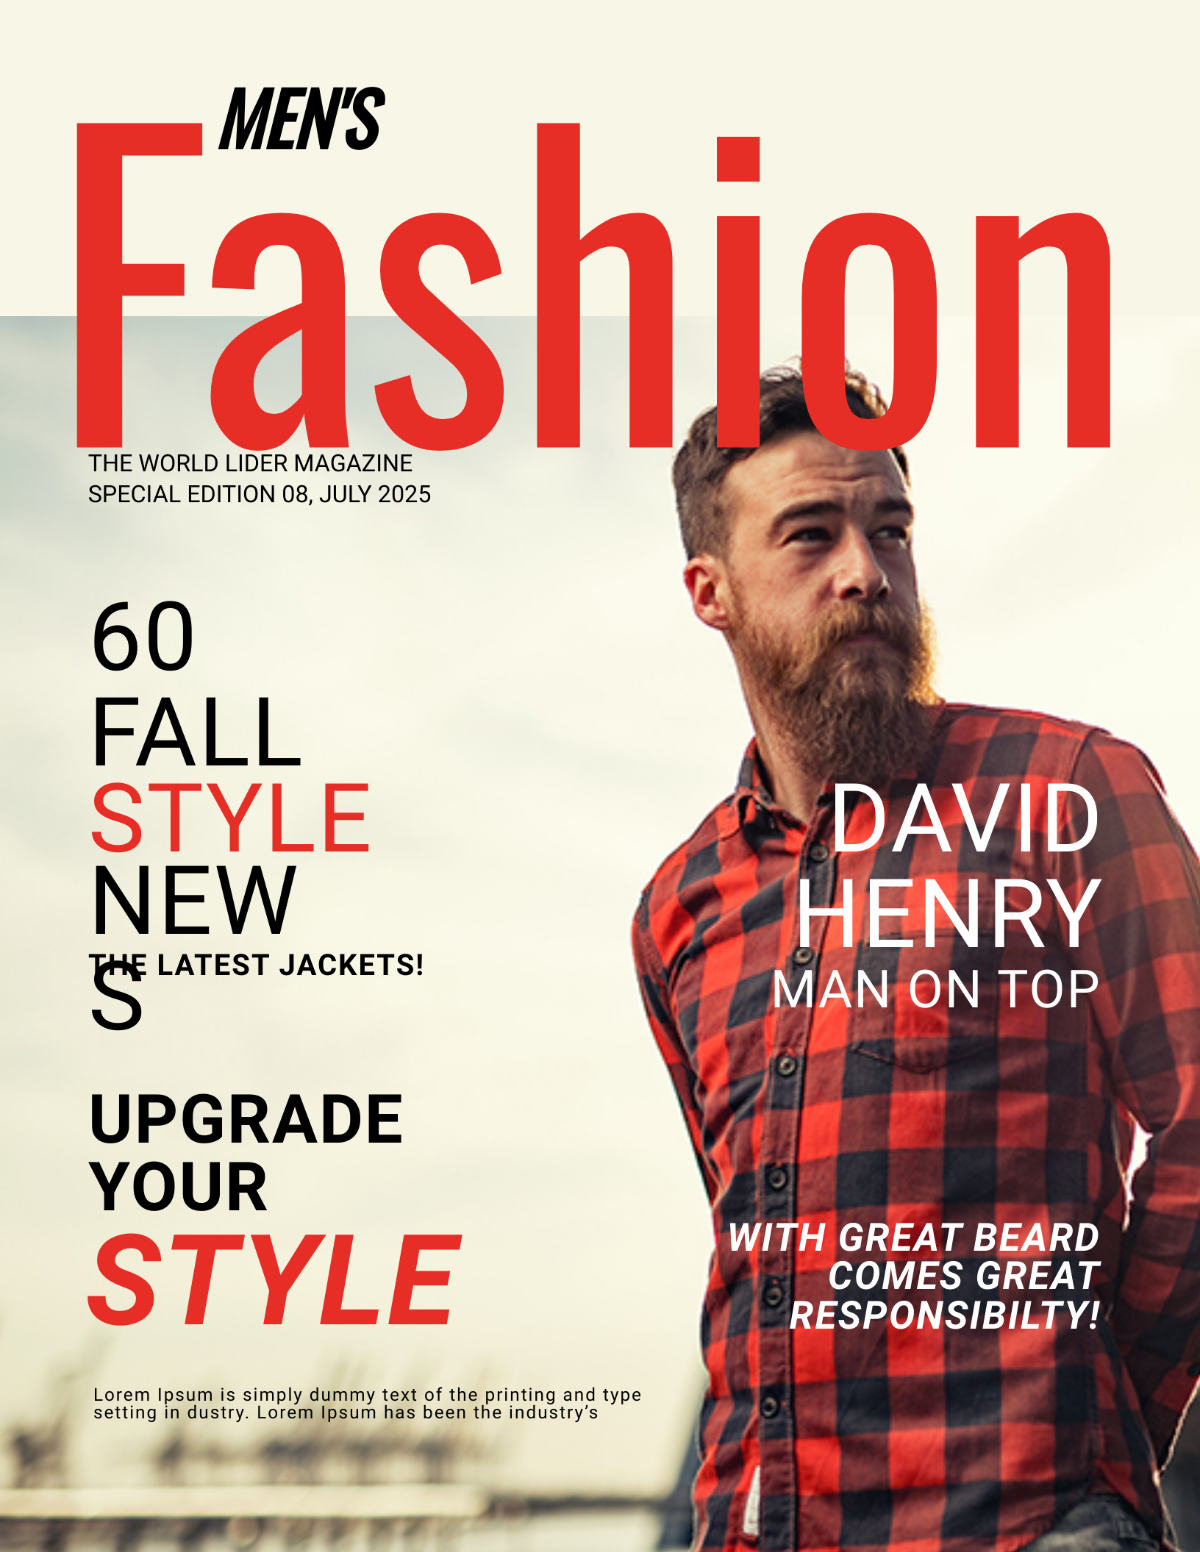 Men's Fashion Magazine Cover Template